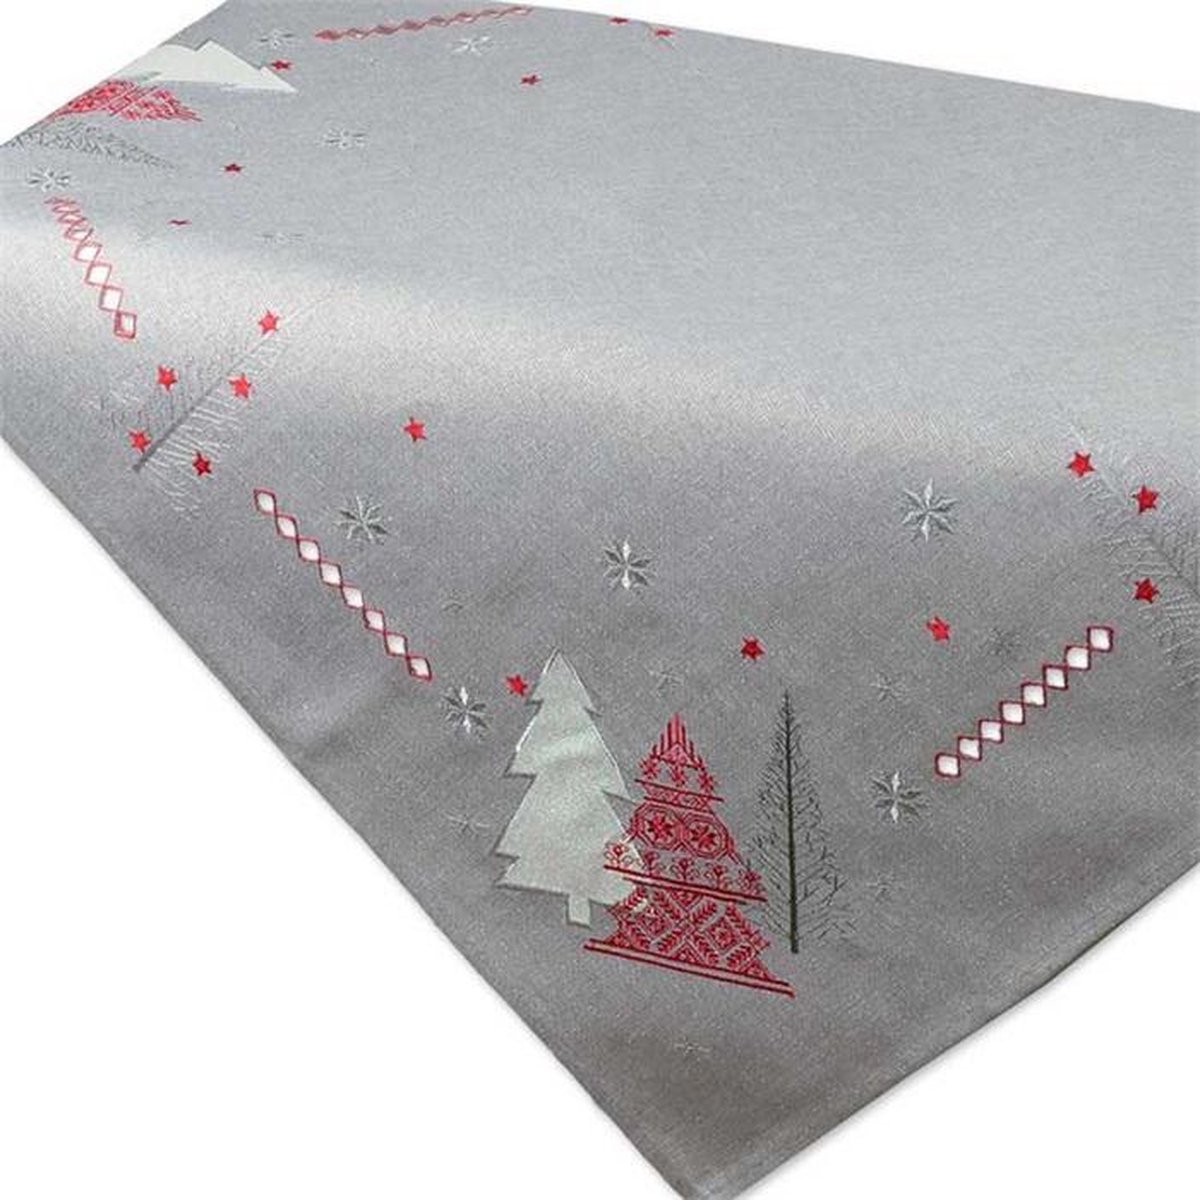 Kerst - Tafelloper - licht grijs met Kerstbomen in rood, wit en grijs er opgestikt - Loper 150cm